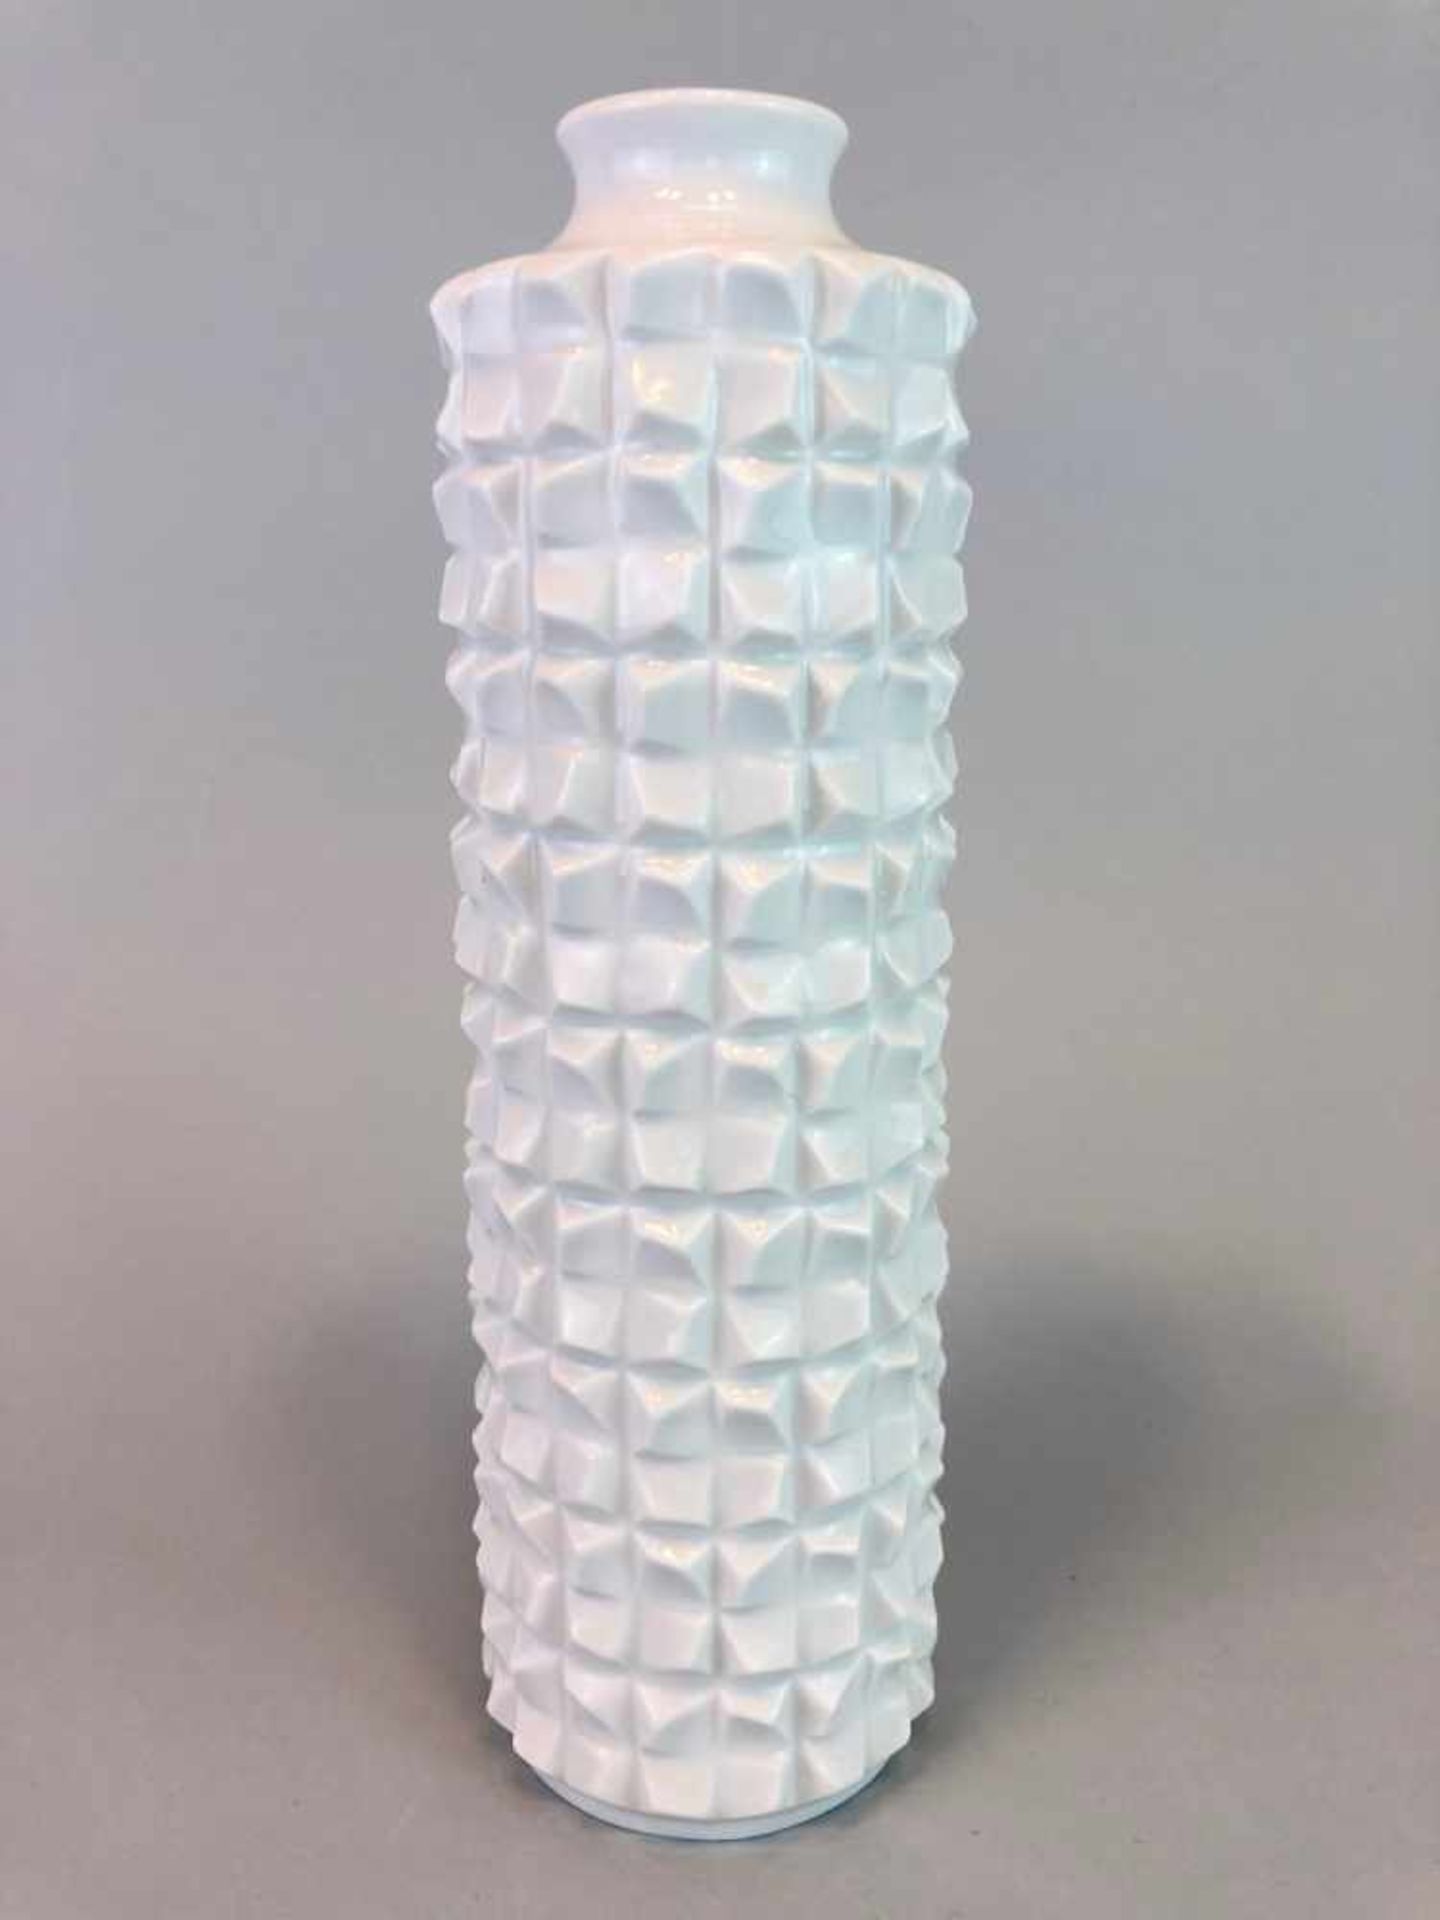 Strukturvase: Meissen Porzellan.Zylindrische Wandung mit plastischem Strukturdekor sowie verjüngte